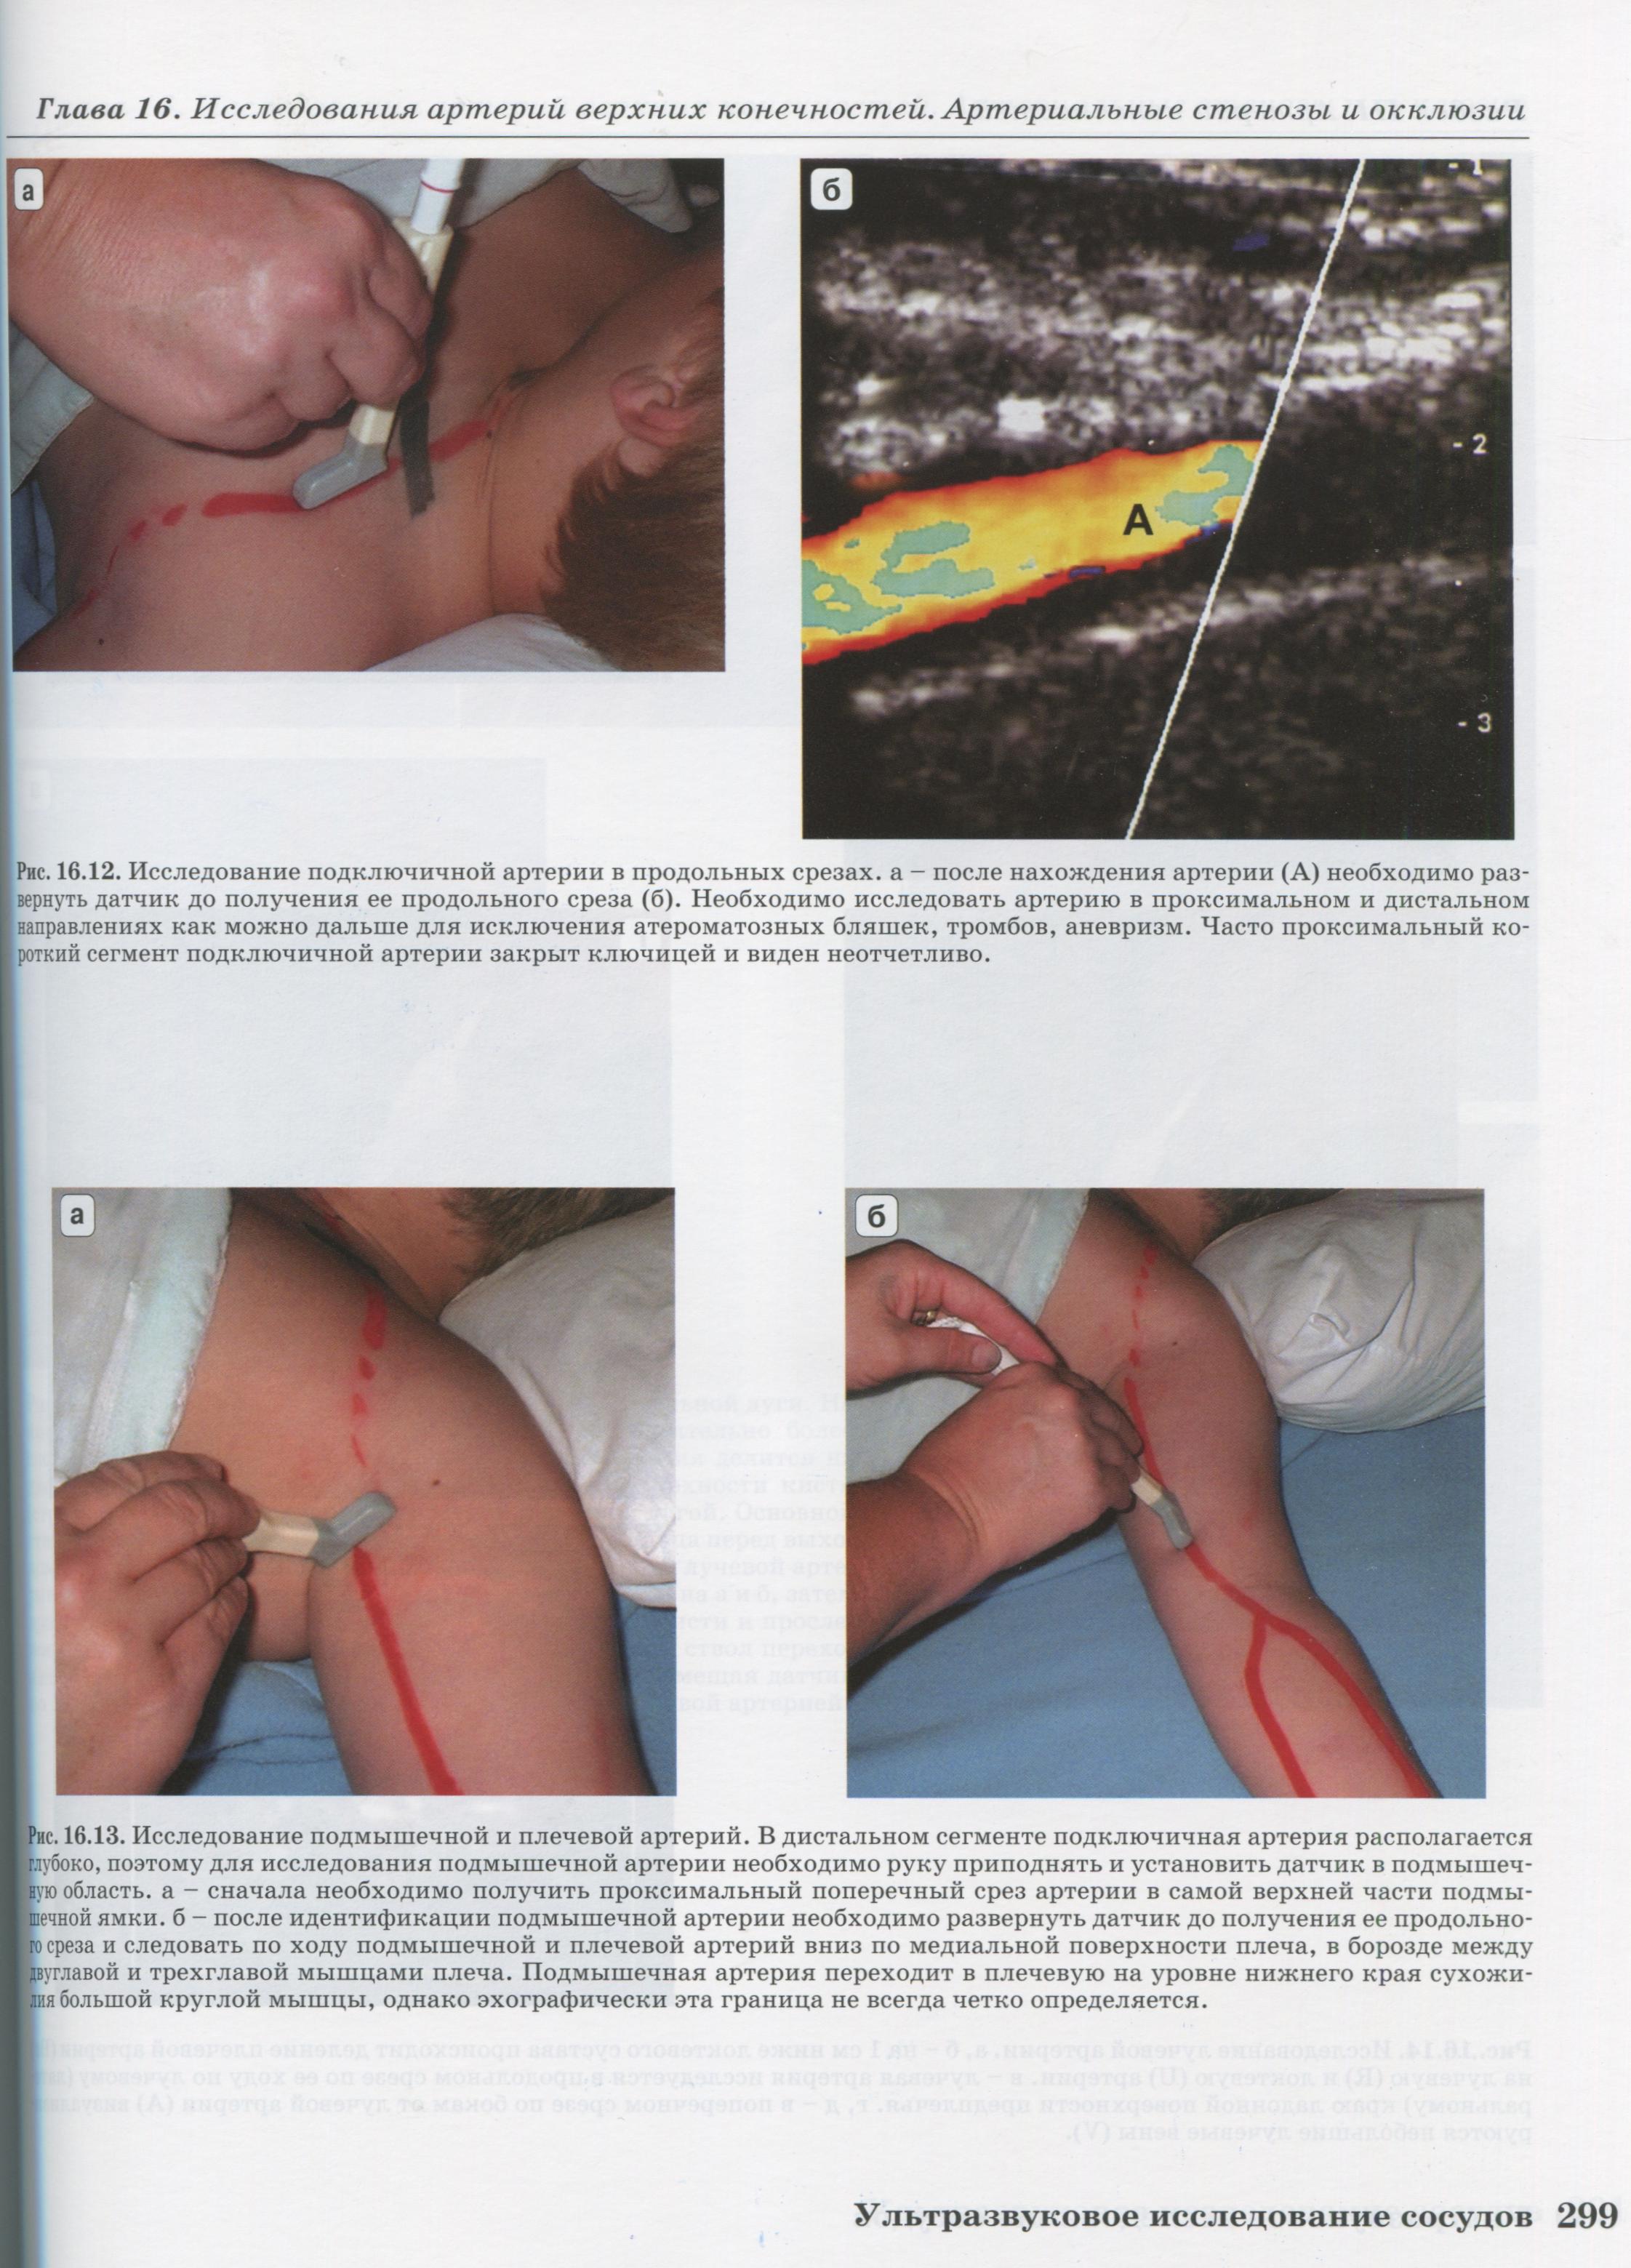 Исследование подмышечной и плечевой артерий